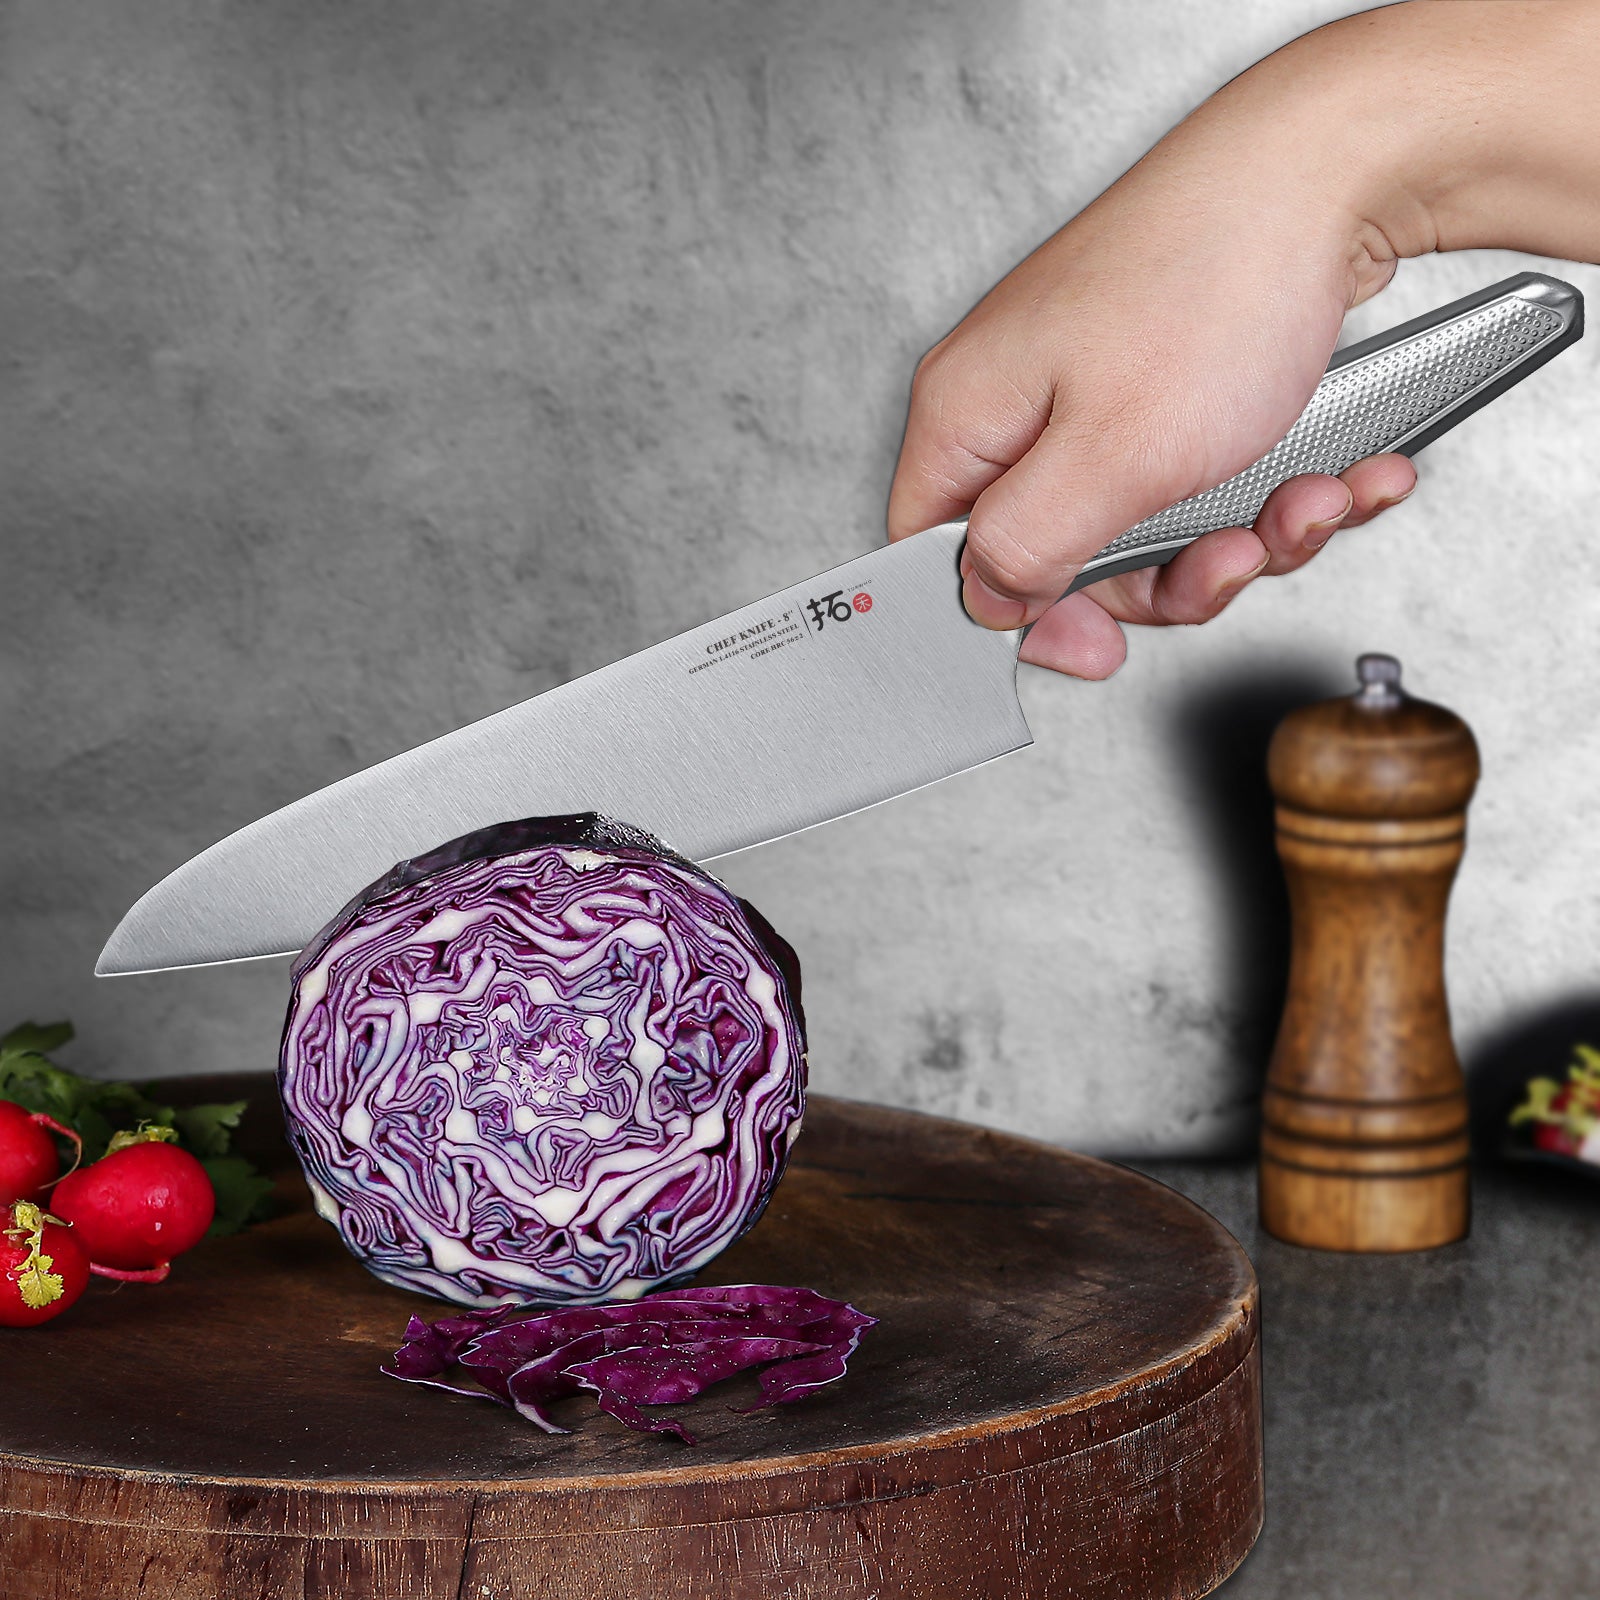 TURWHO 7PCS Japanese Damascus Steel Kitchen Knife Sets – Master